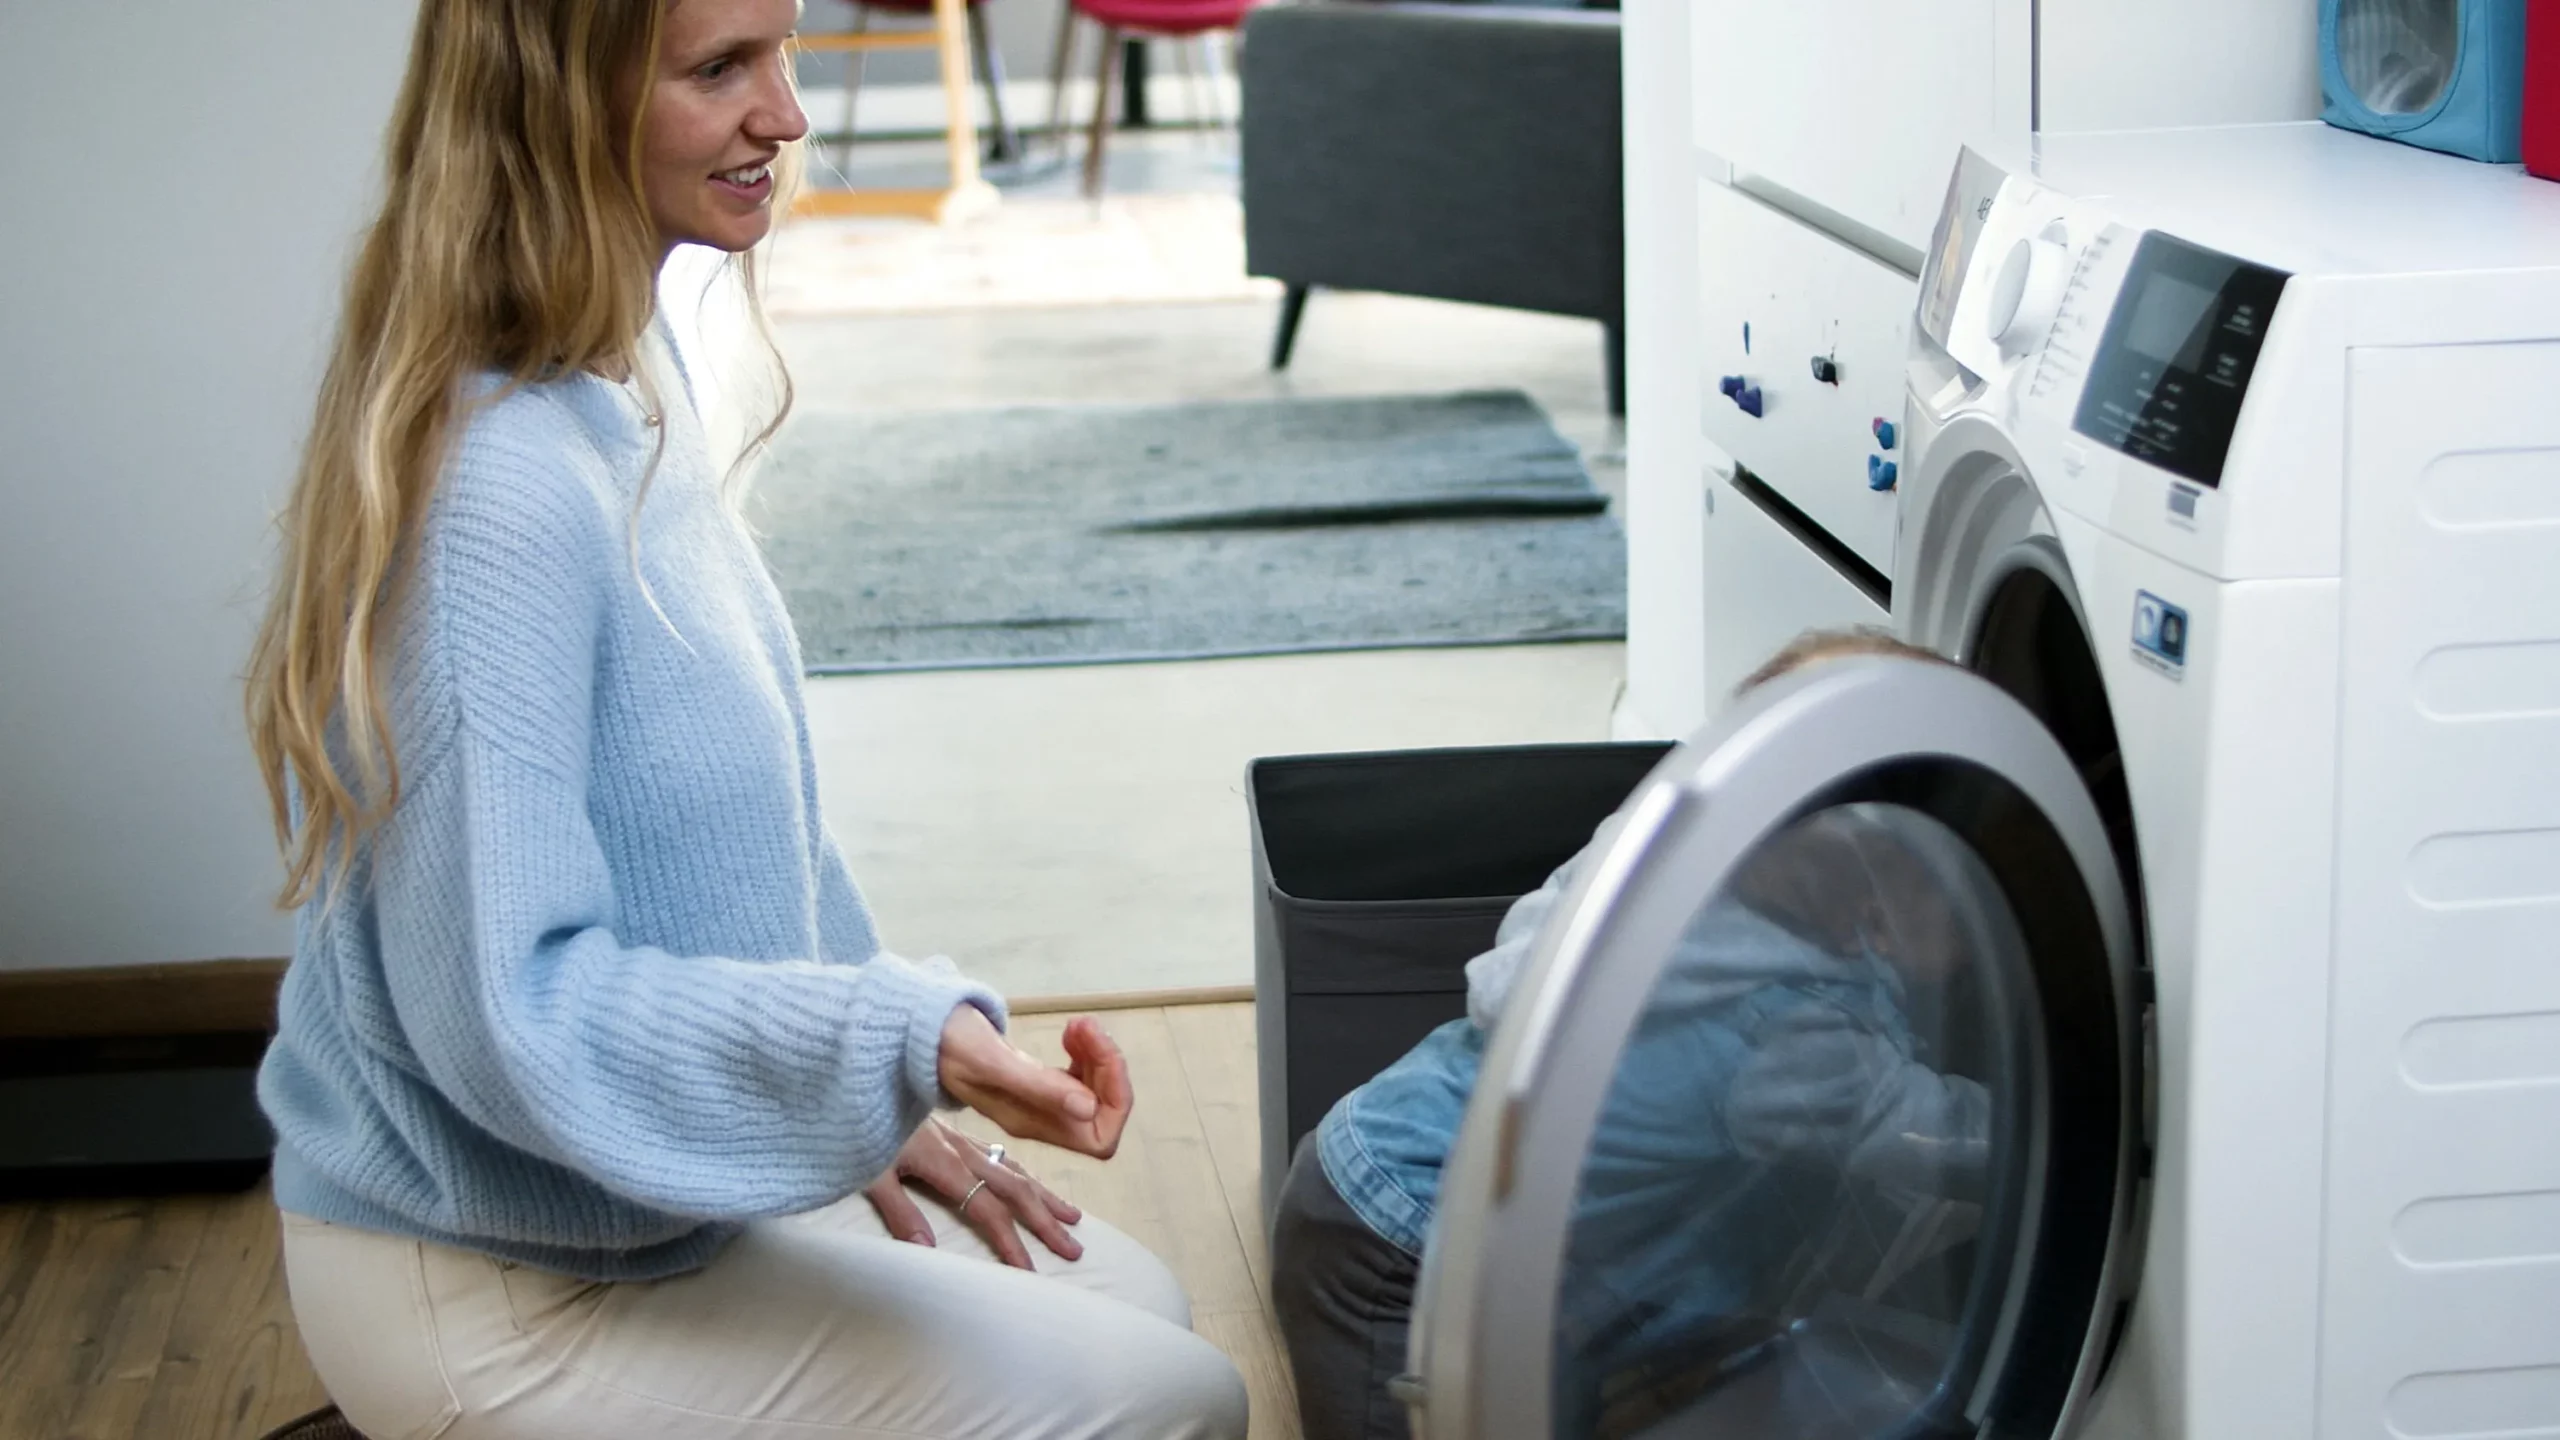 Acerca de la configuración Brisa Bonito Las lavadoras secadoras integrables A+++ que ahorran más luz